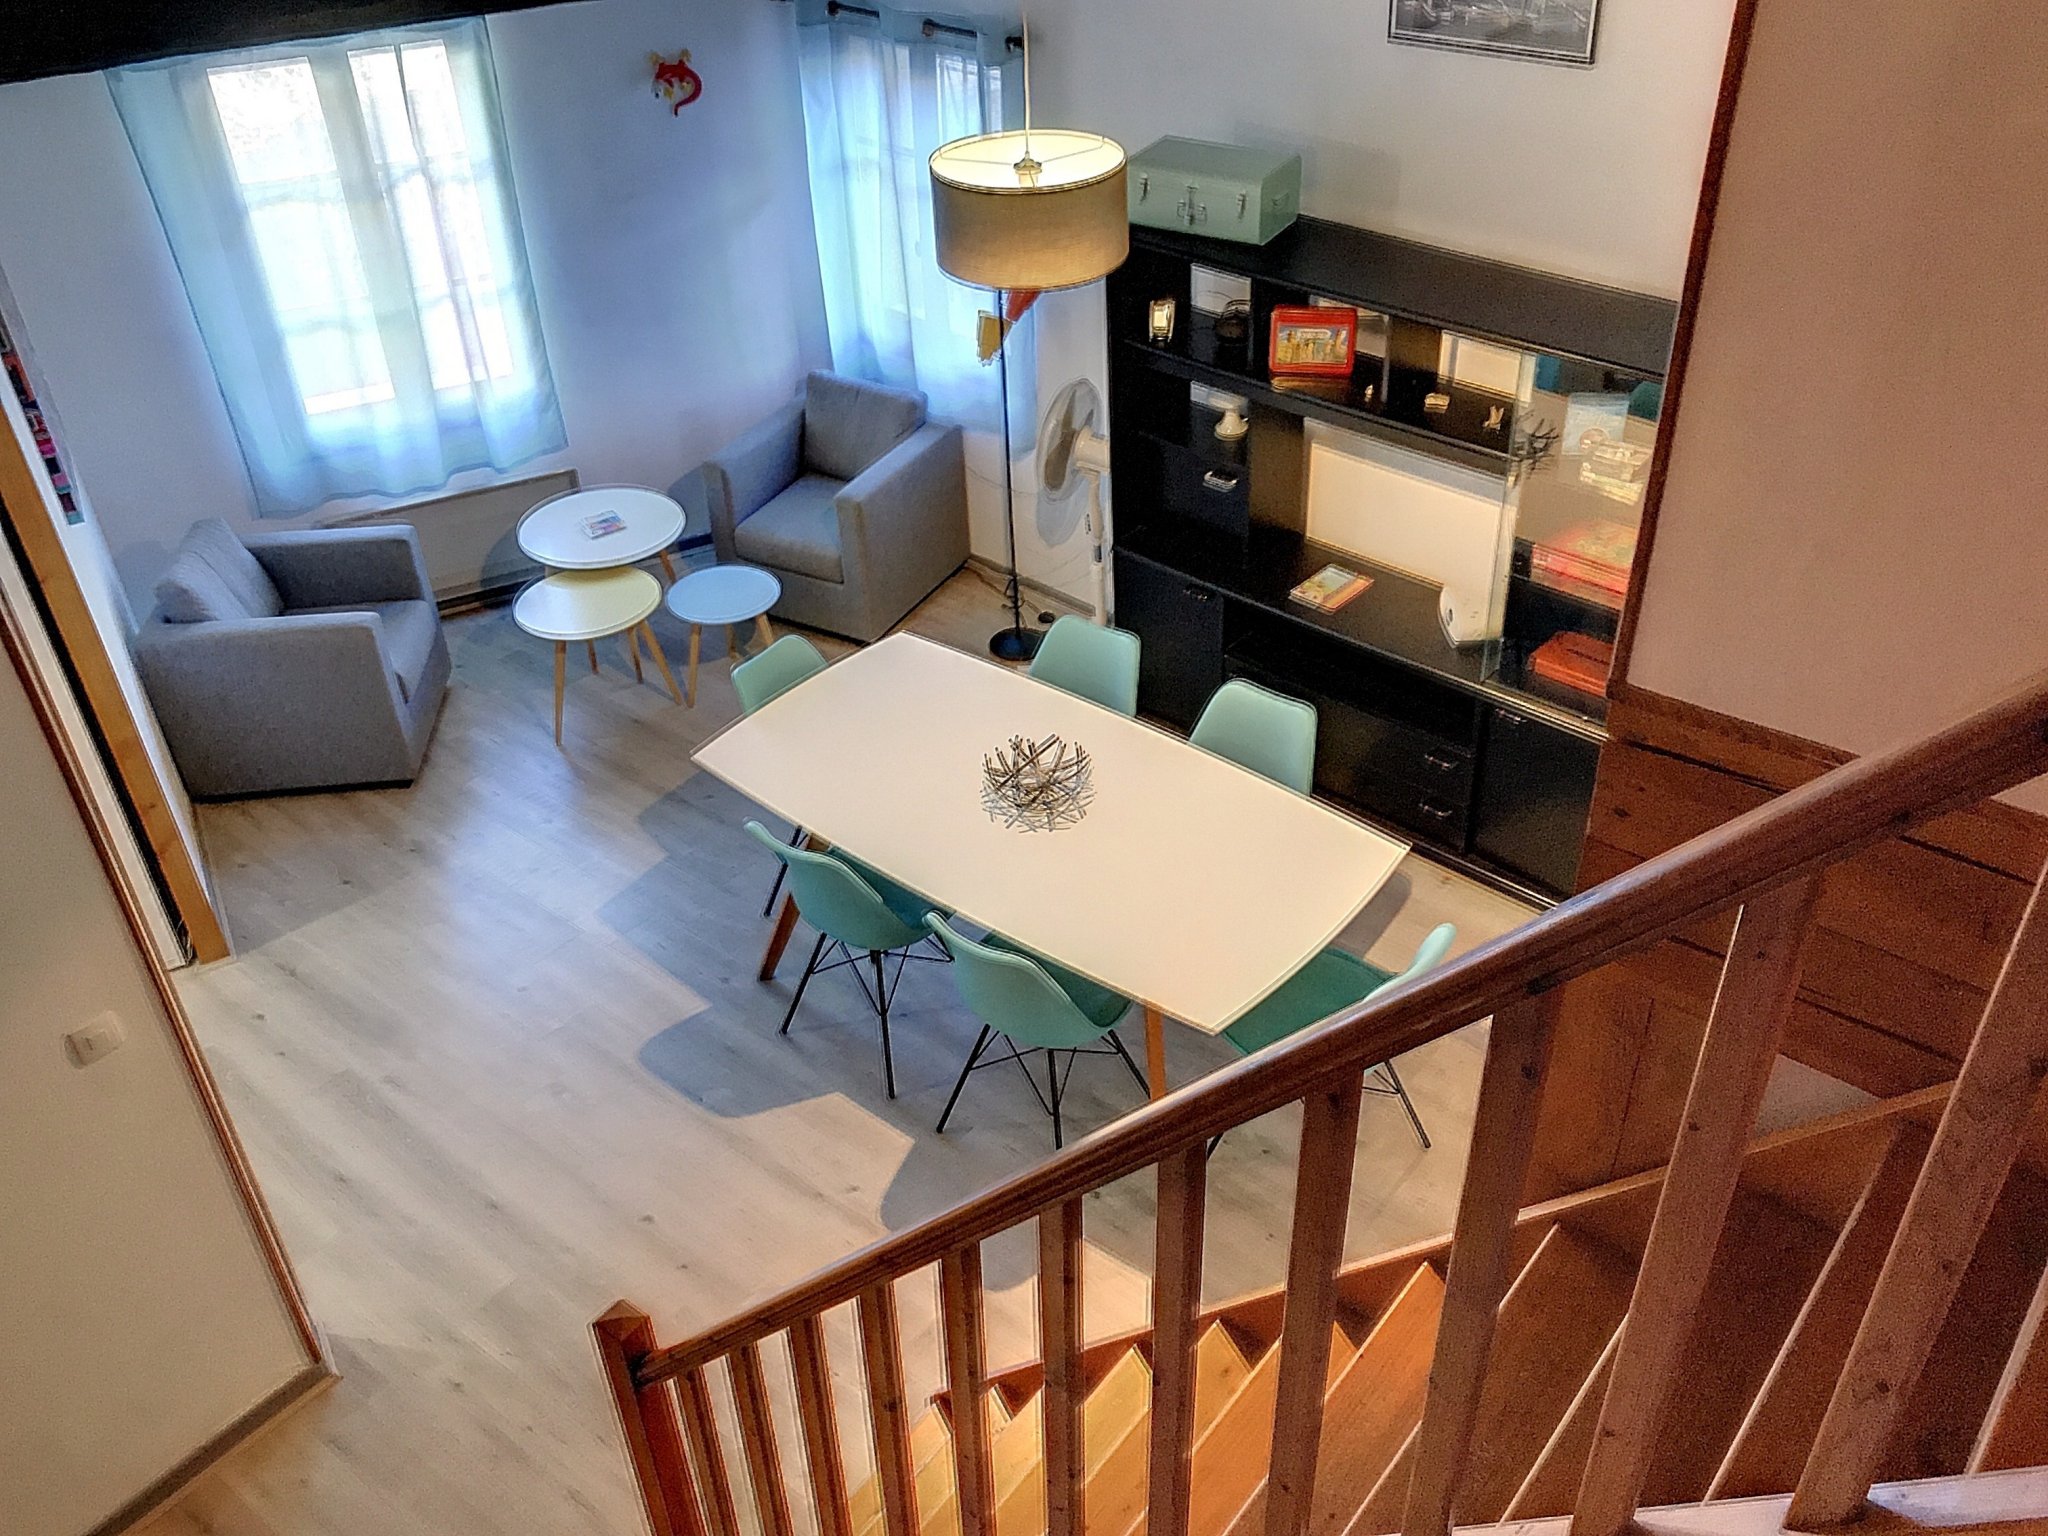 Collioure, Achetez votre appartement  T4 au 1er étage à 2 min de la plage